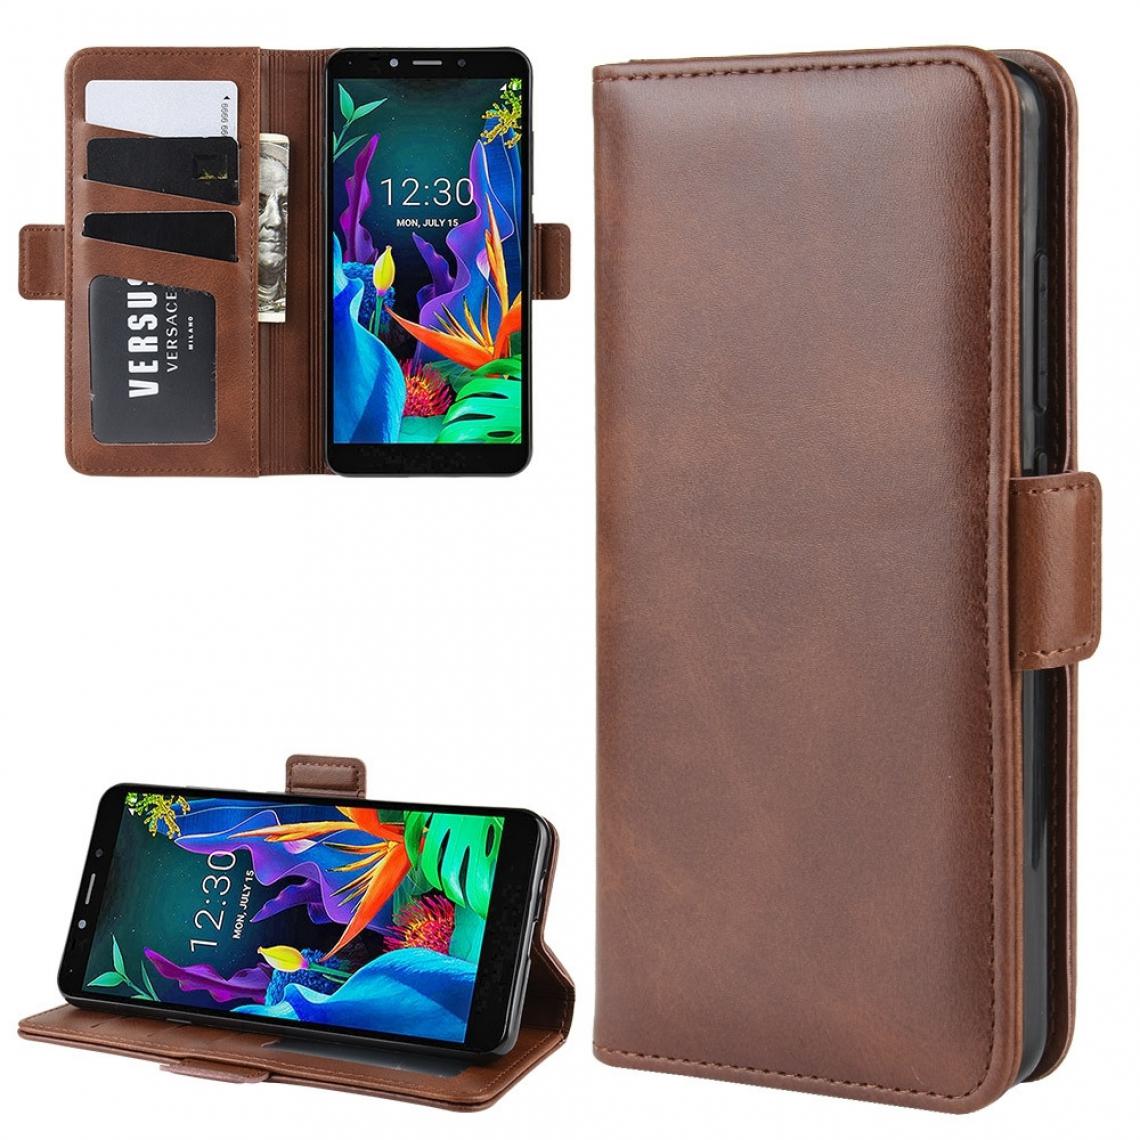 Wewoo - Housse Coque Pour LG K20 2019 Etui portefeuille avec étui en cuir téléphone portable porte-monnaie et cartes de crédit Marron - Coque, étui smartphone